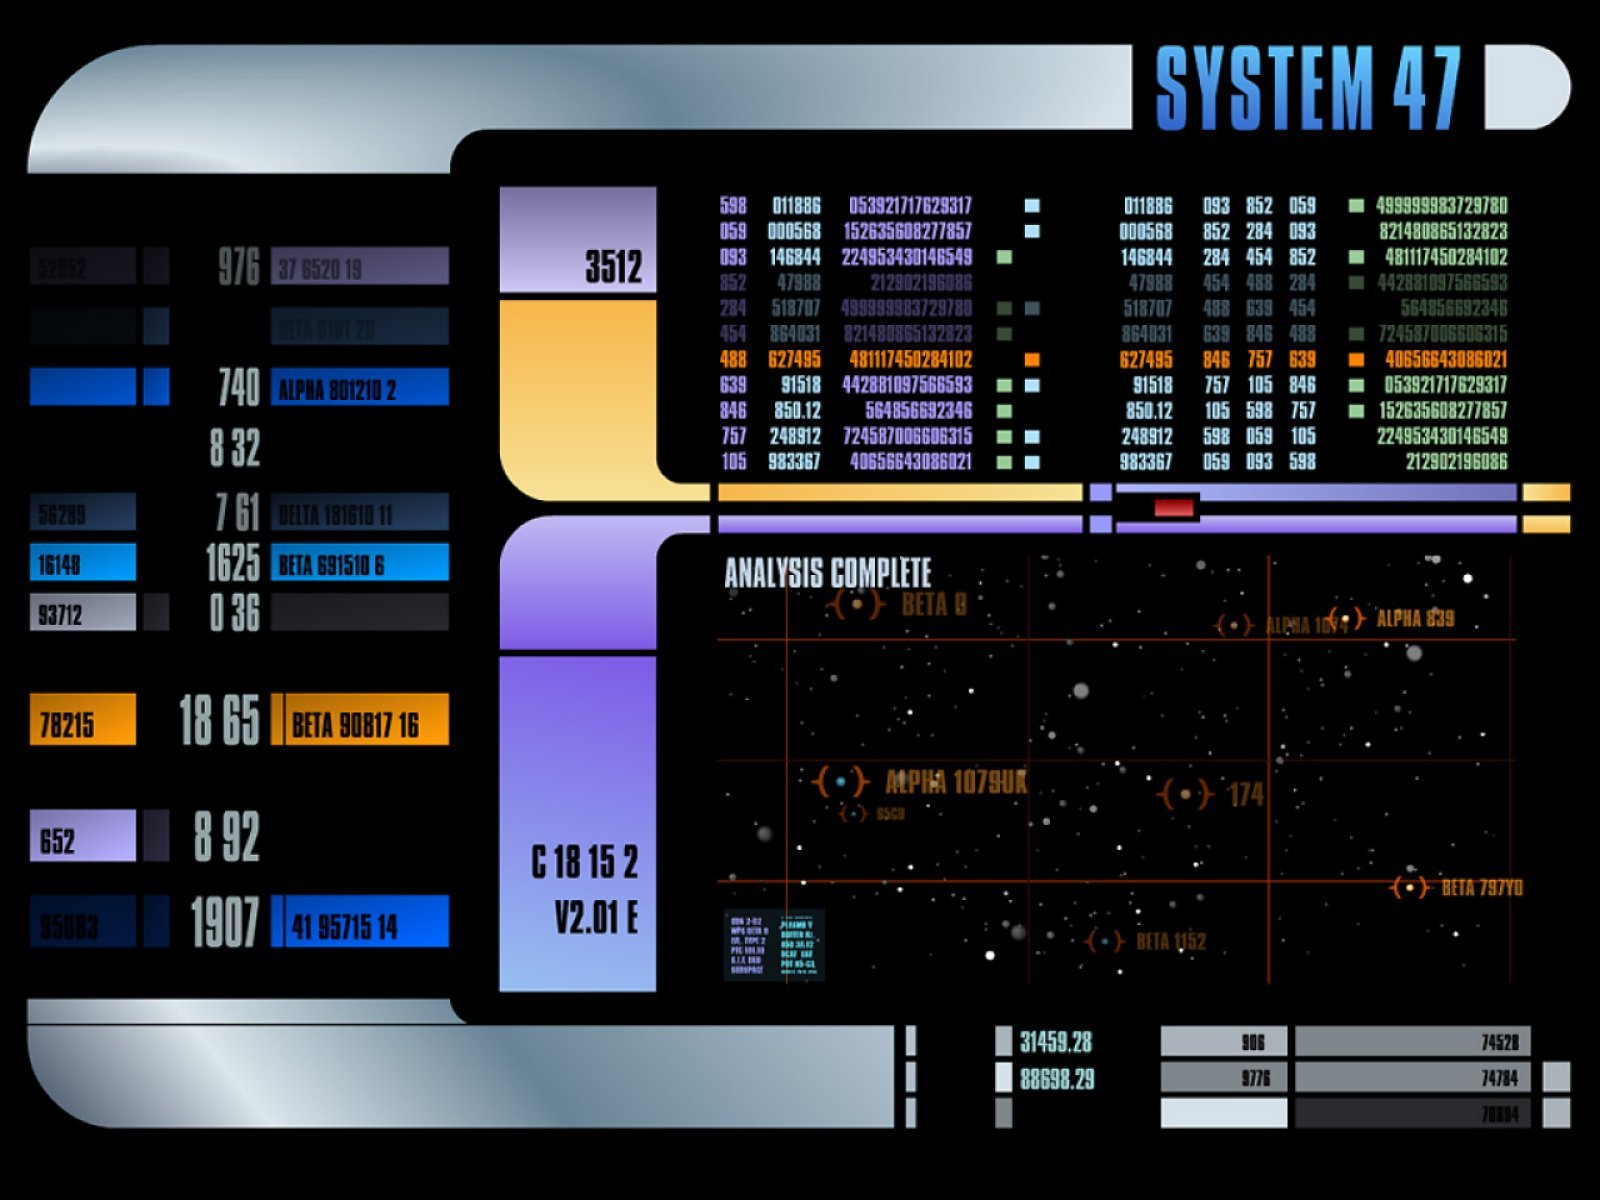 [48+] Star Trek Control Panel Wallpaper on WallpaperSafari
